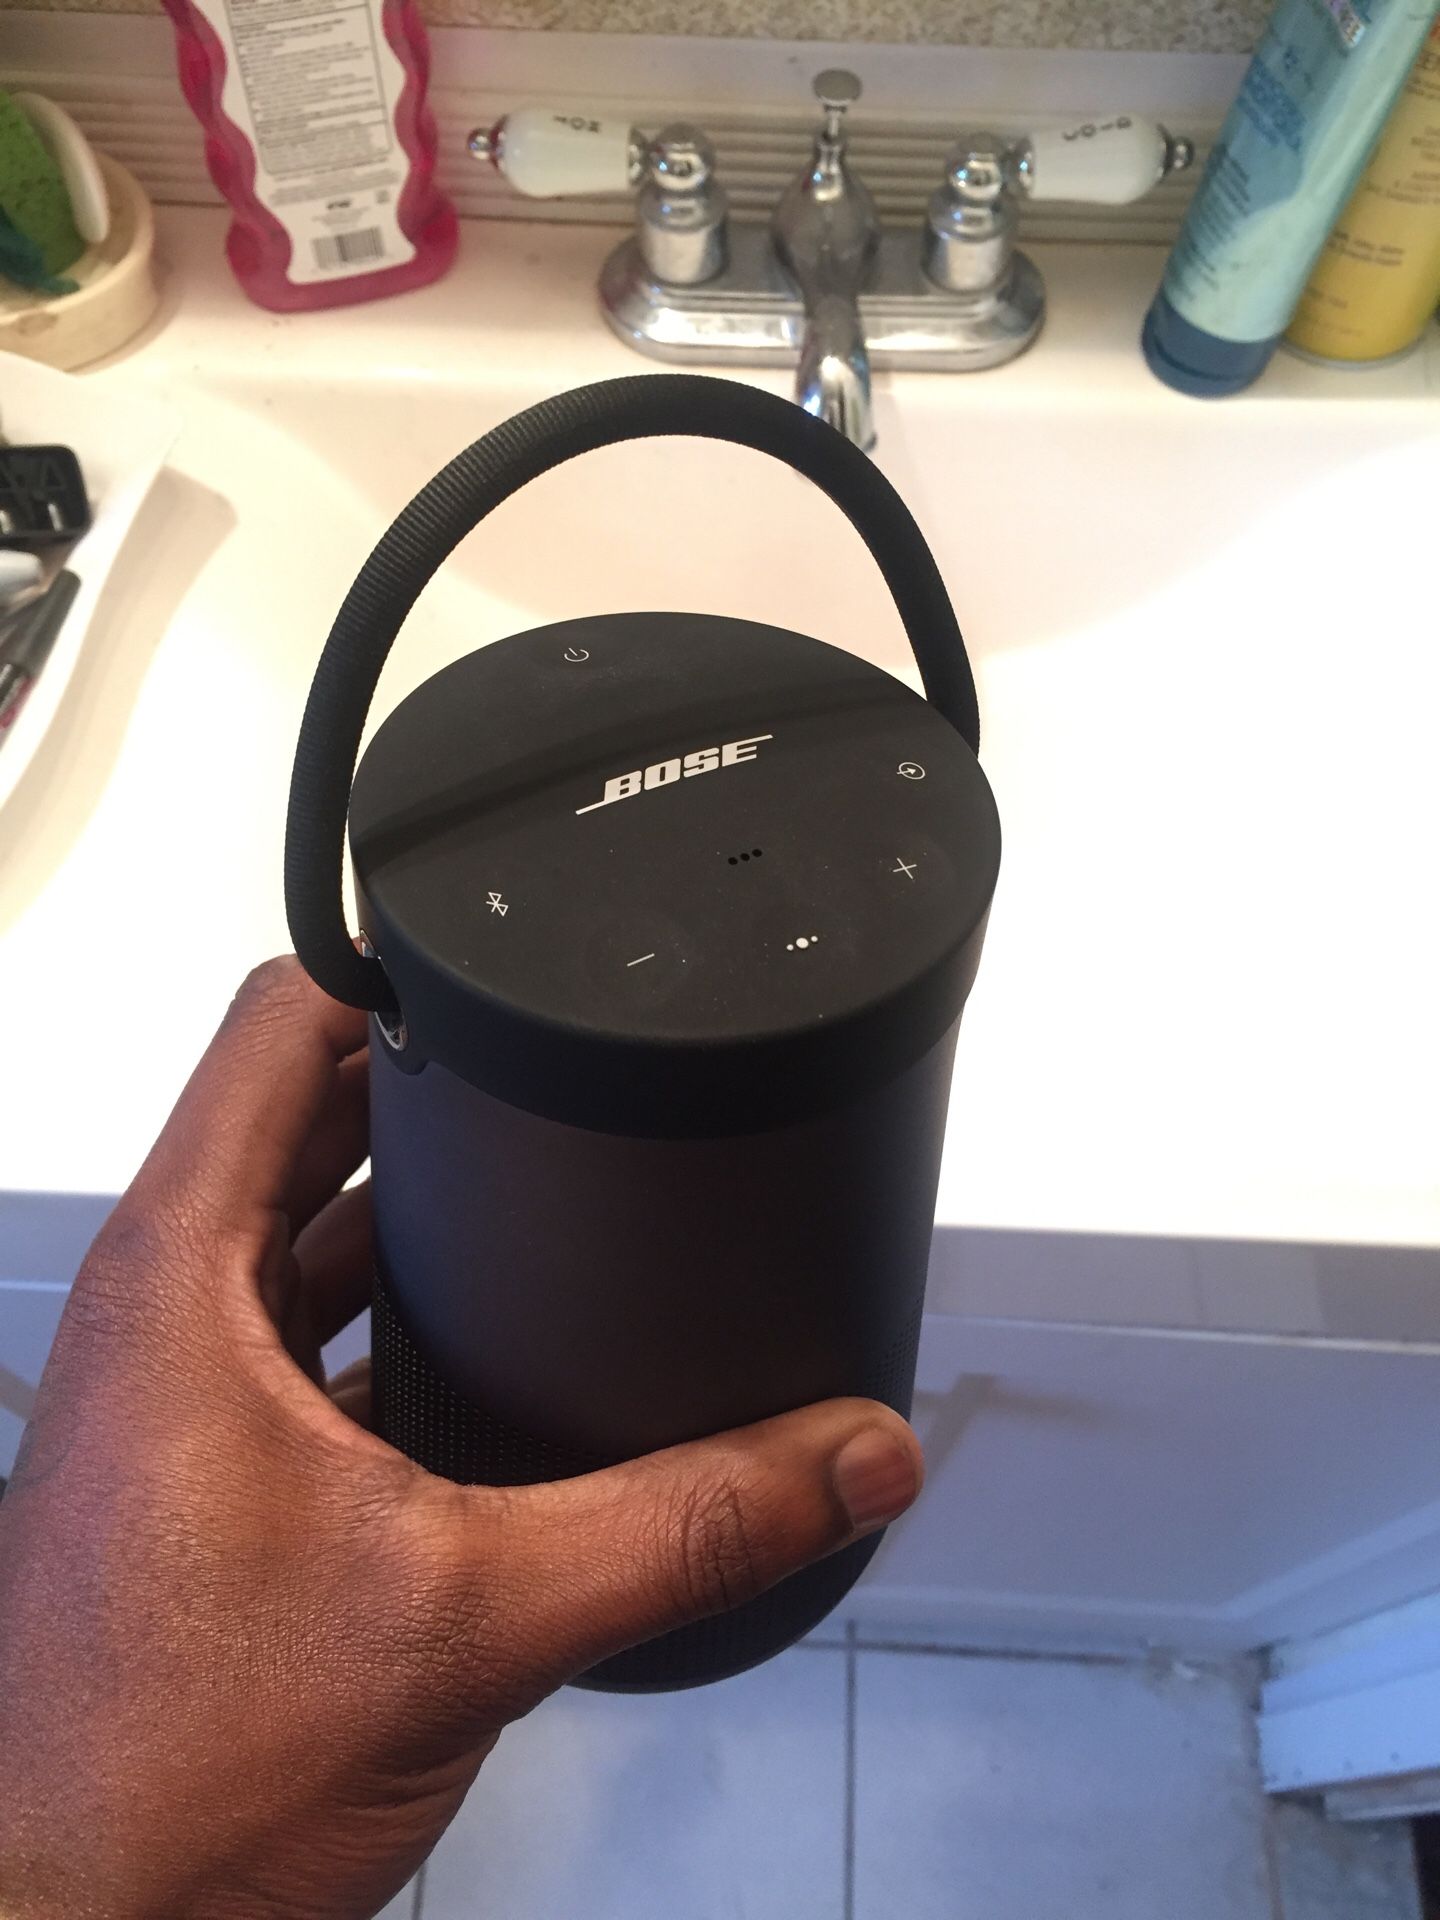 BOSE (Portable speaker) Brand New